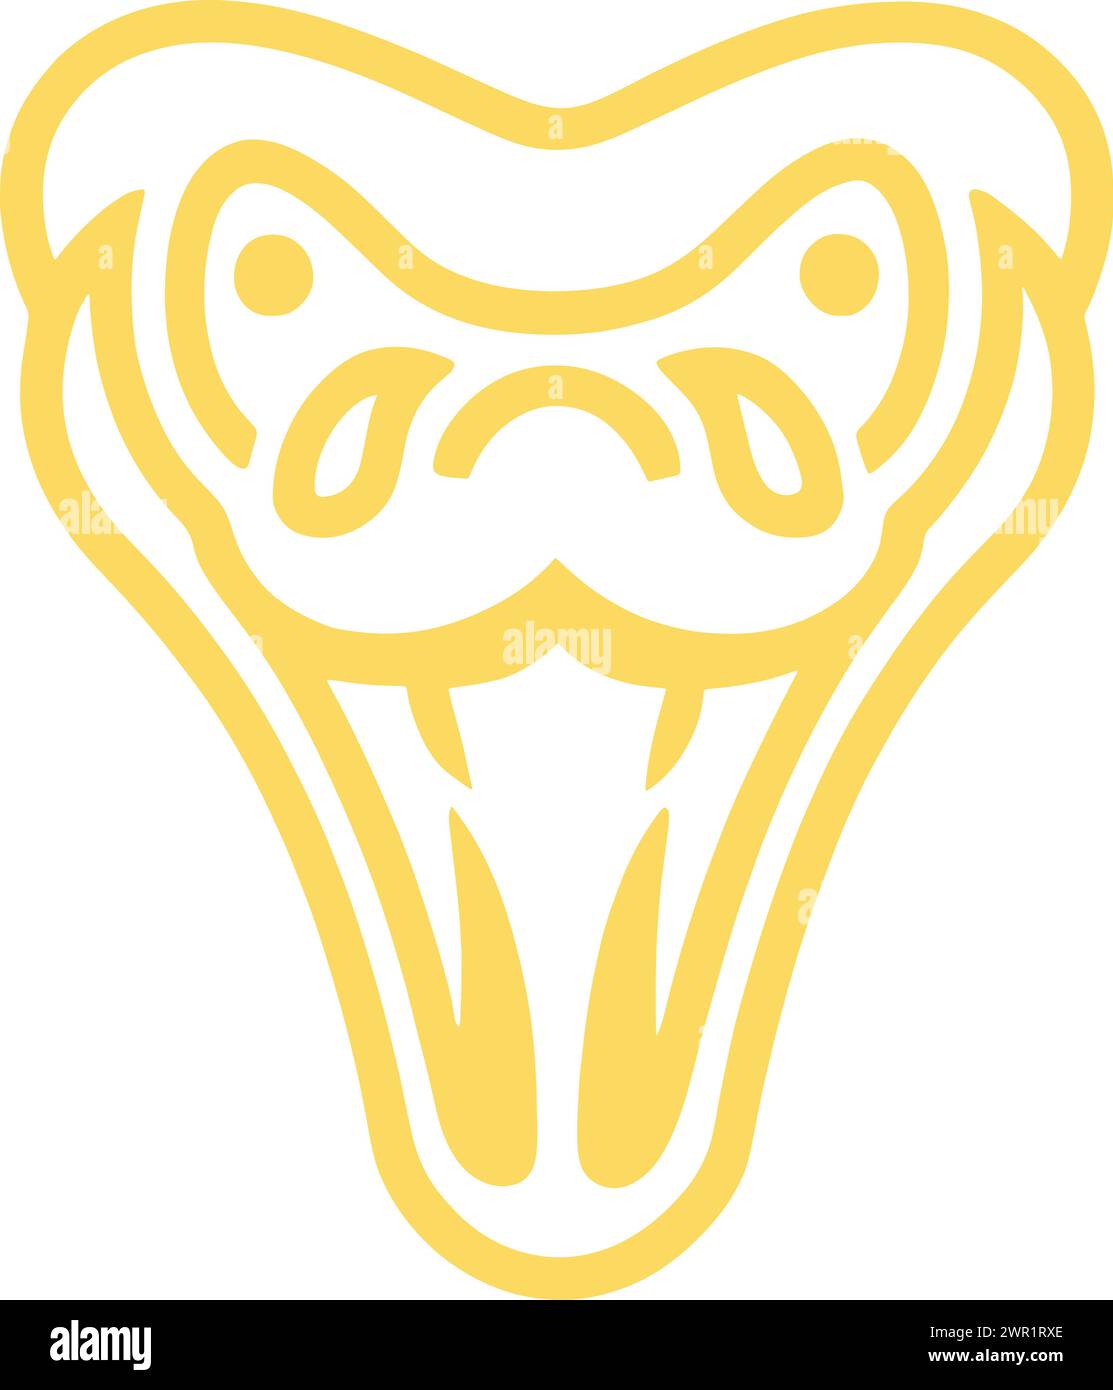 Adoptez la sophistication et l'allure avec notre modèle de logo Gold Snake Head Outline Stroke. Cet emblème élégant capture l'essence élancée et puissante o Illustration de Vecteur